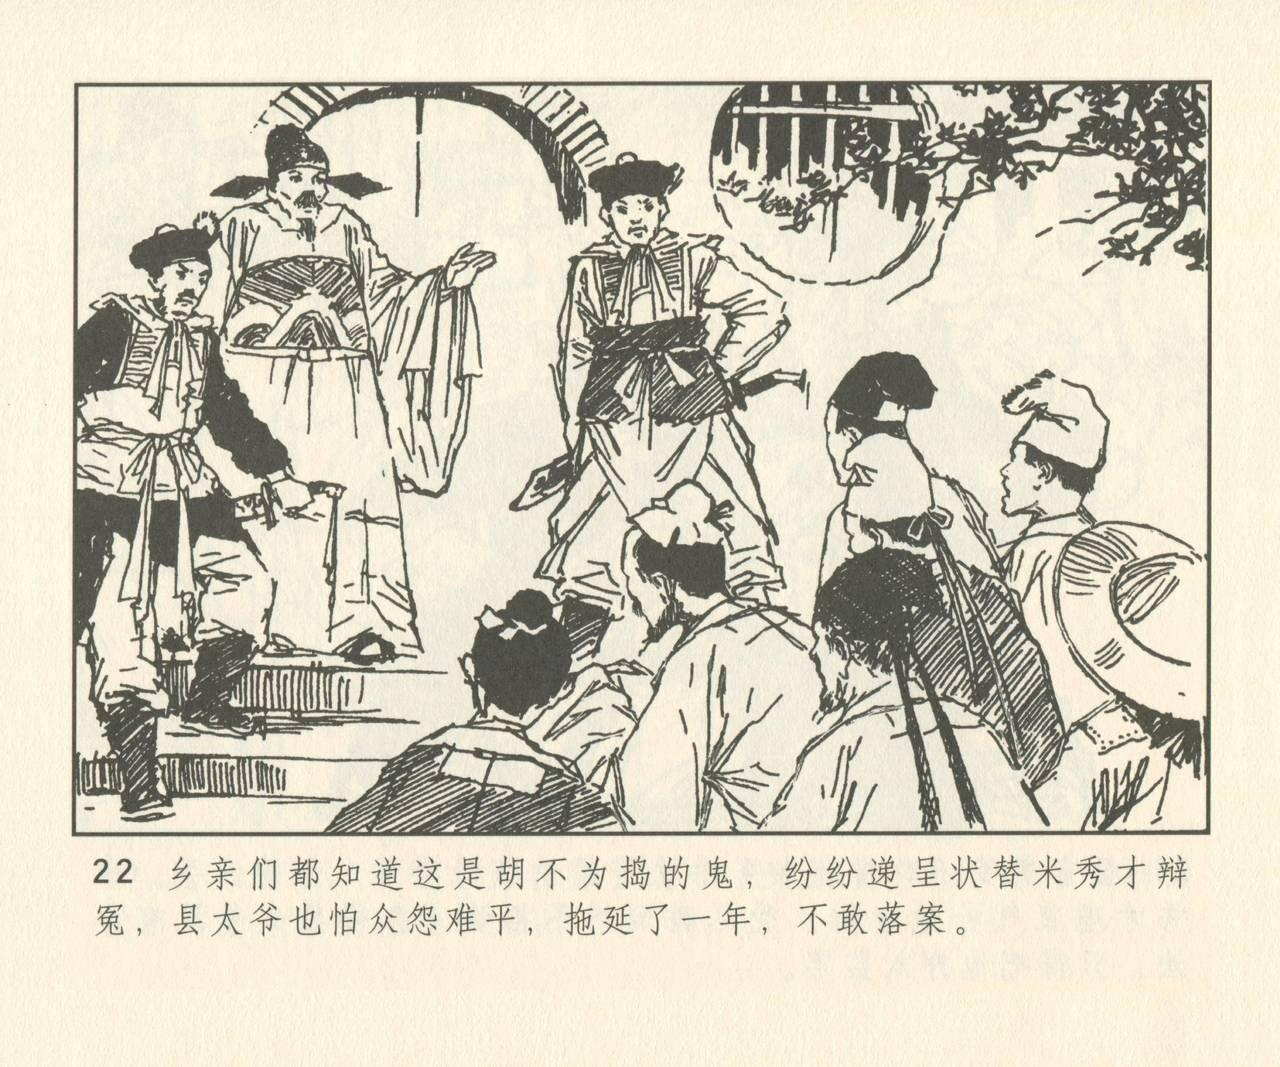 聊斋志异 张玮等绘 天津人民美术出版社 卷二十一 ~ 三十 150